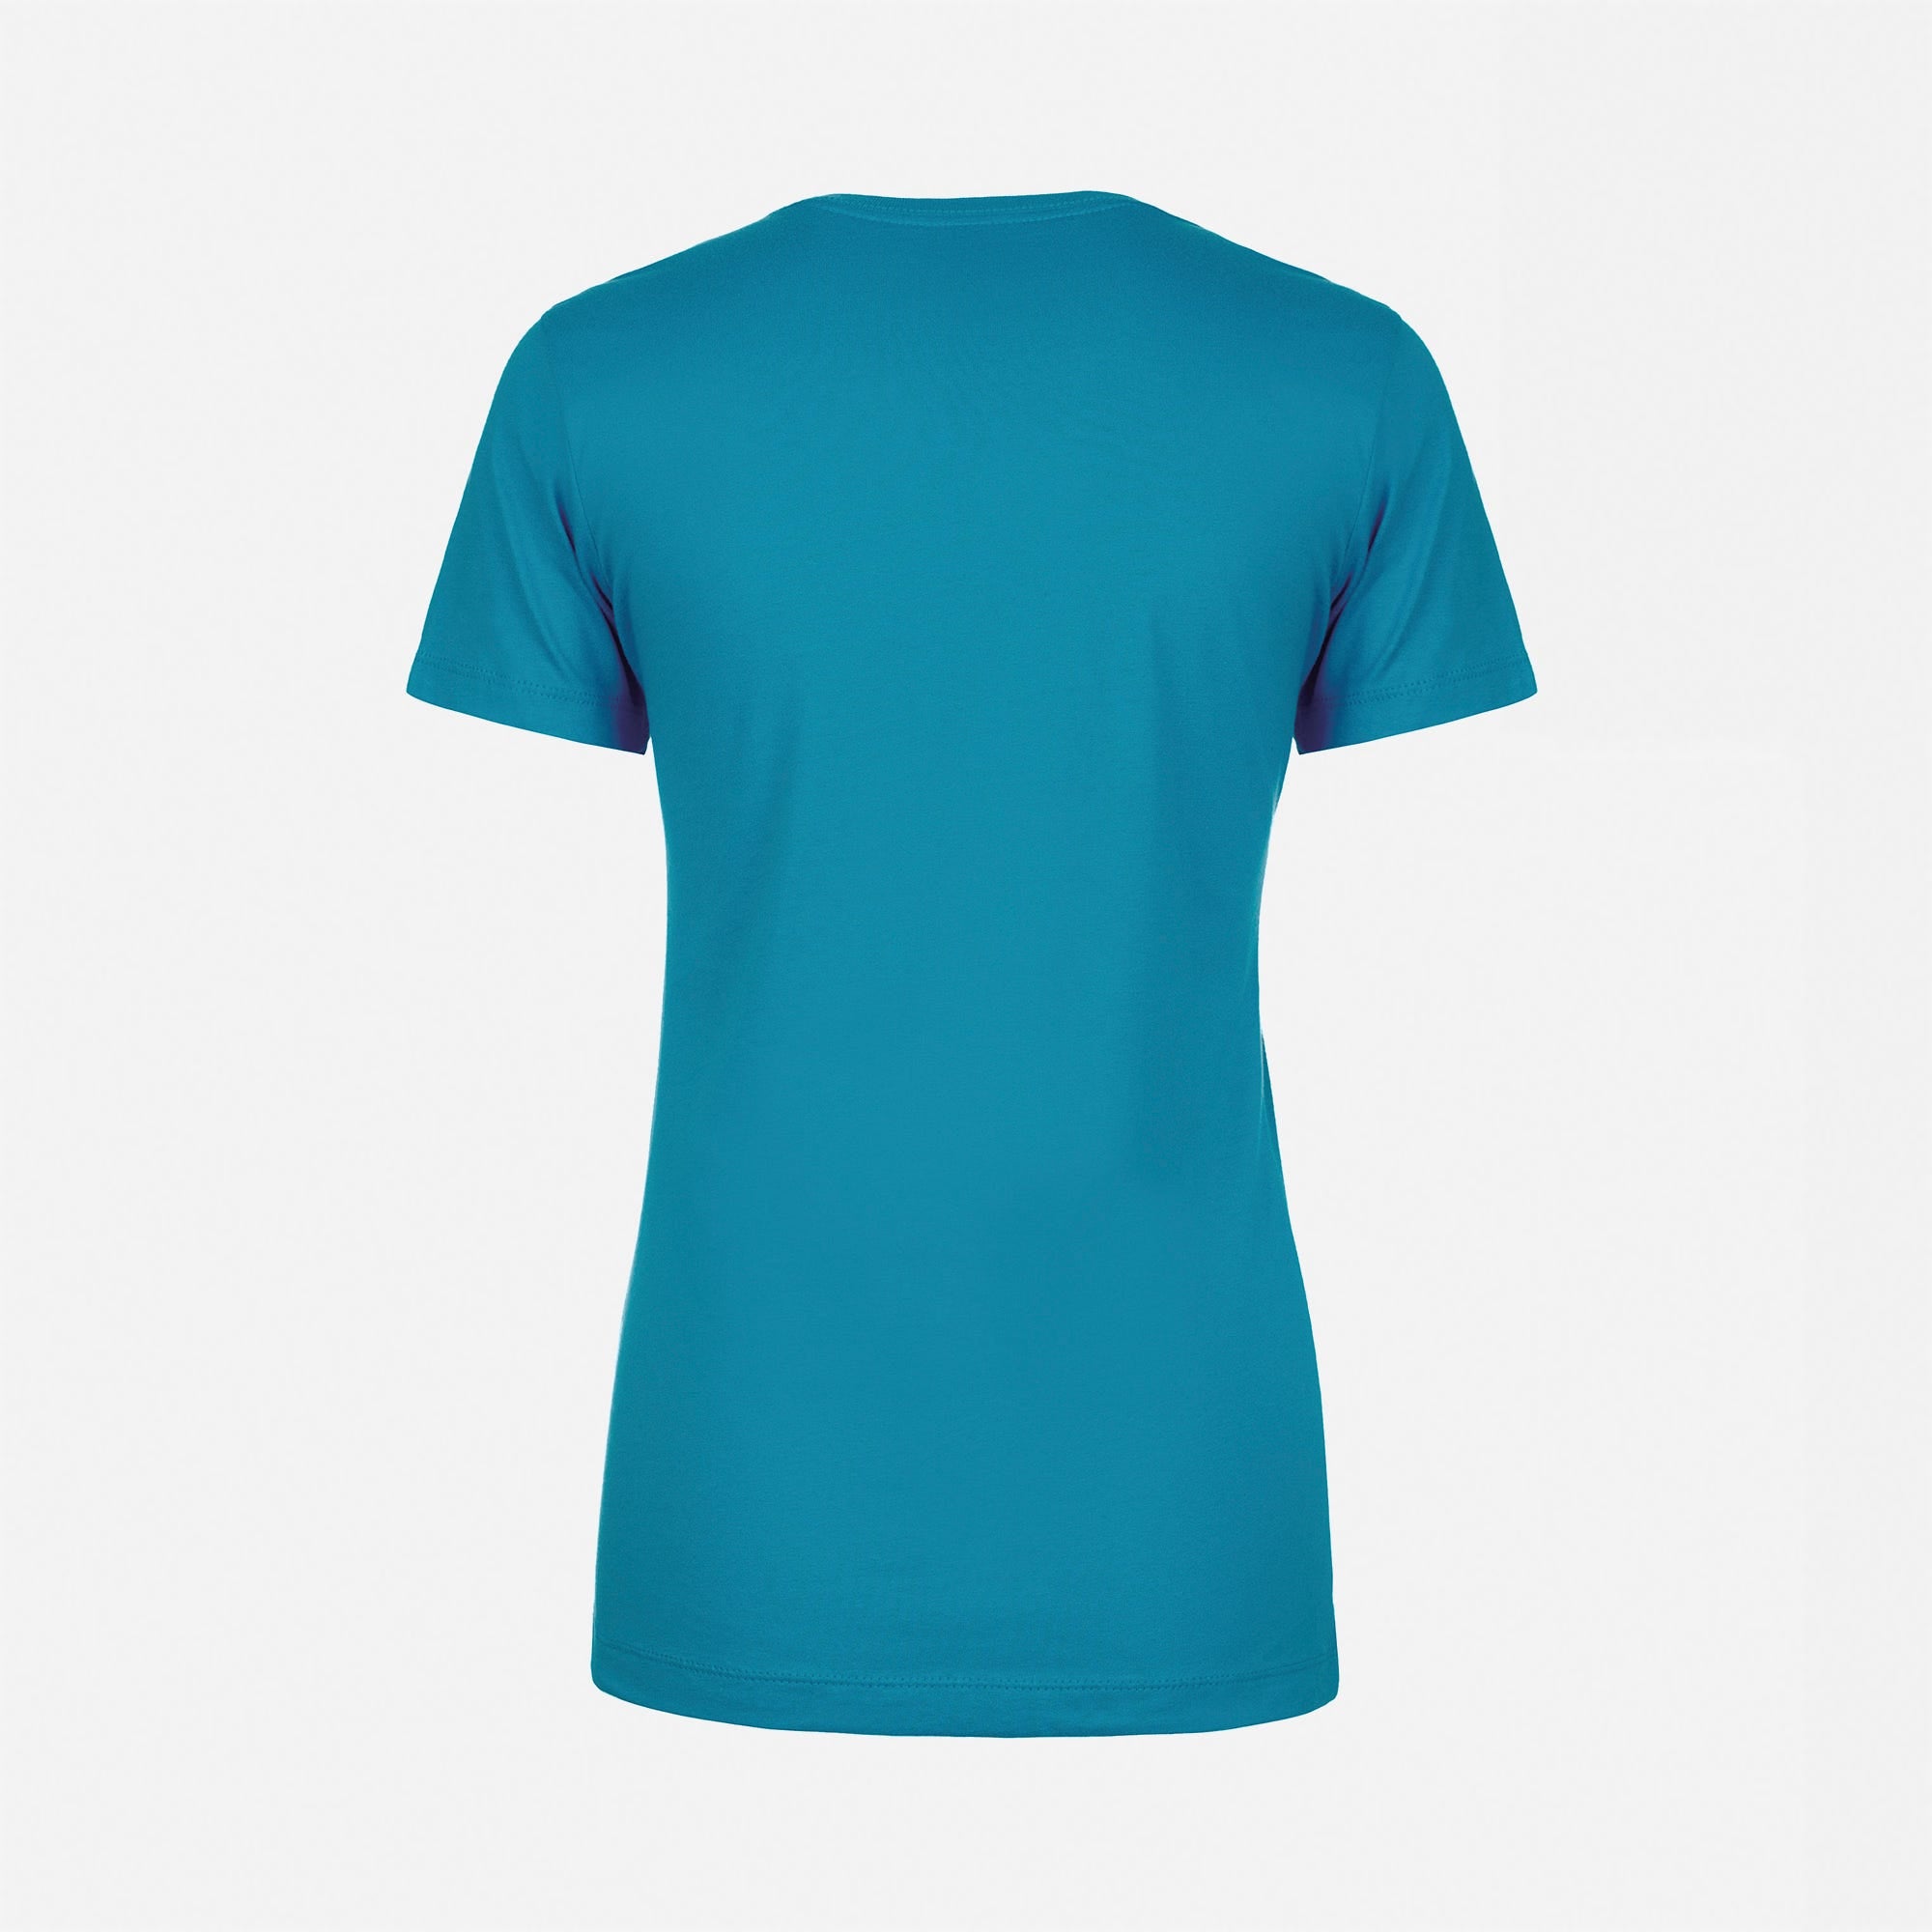 Cotton Boyfriend T-Shirt Turquoise 3900 Next Level Apparel Women's Back View